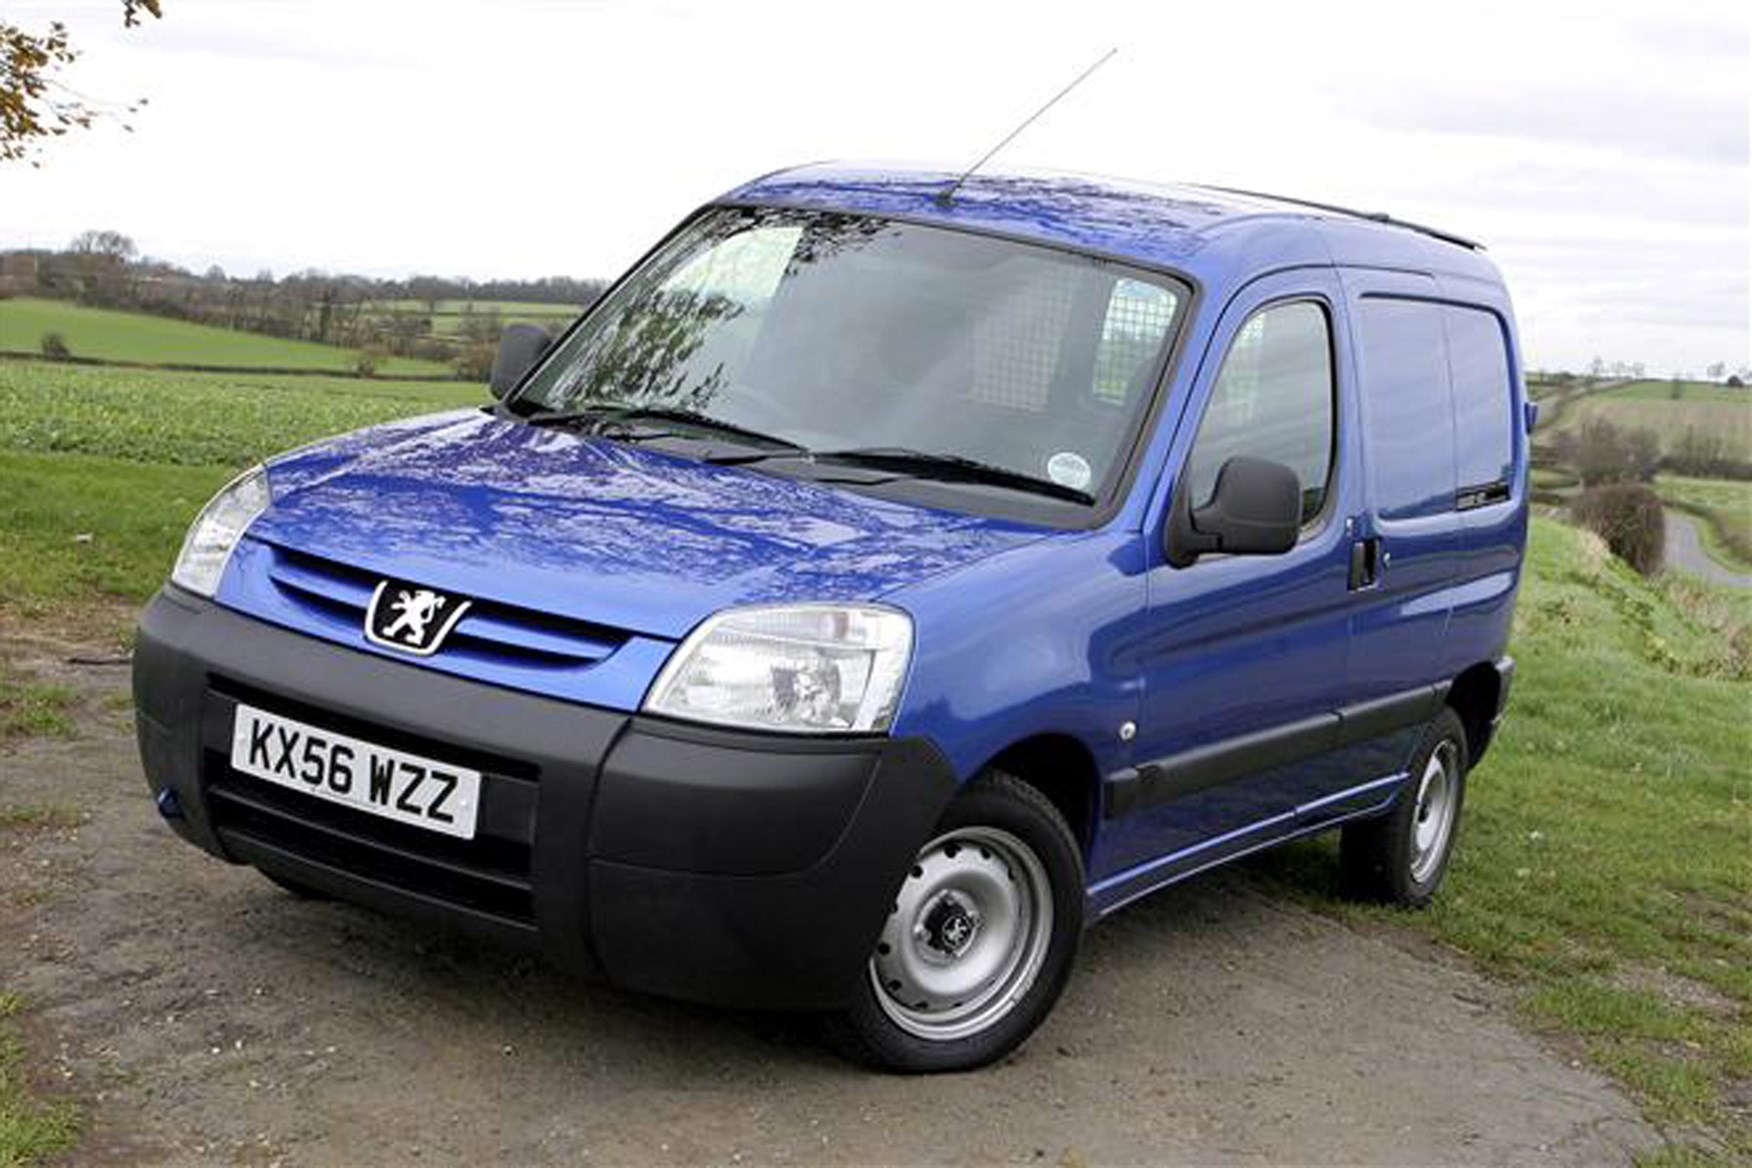 Peugeot Partner review on Parkers Vans - exterior